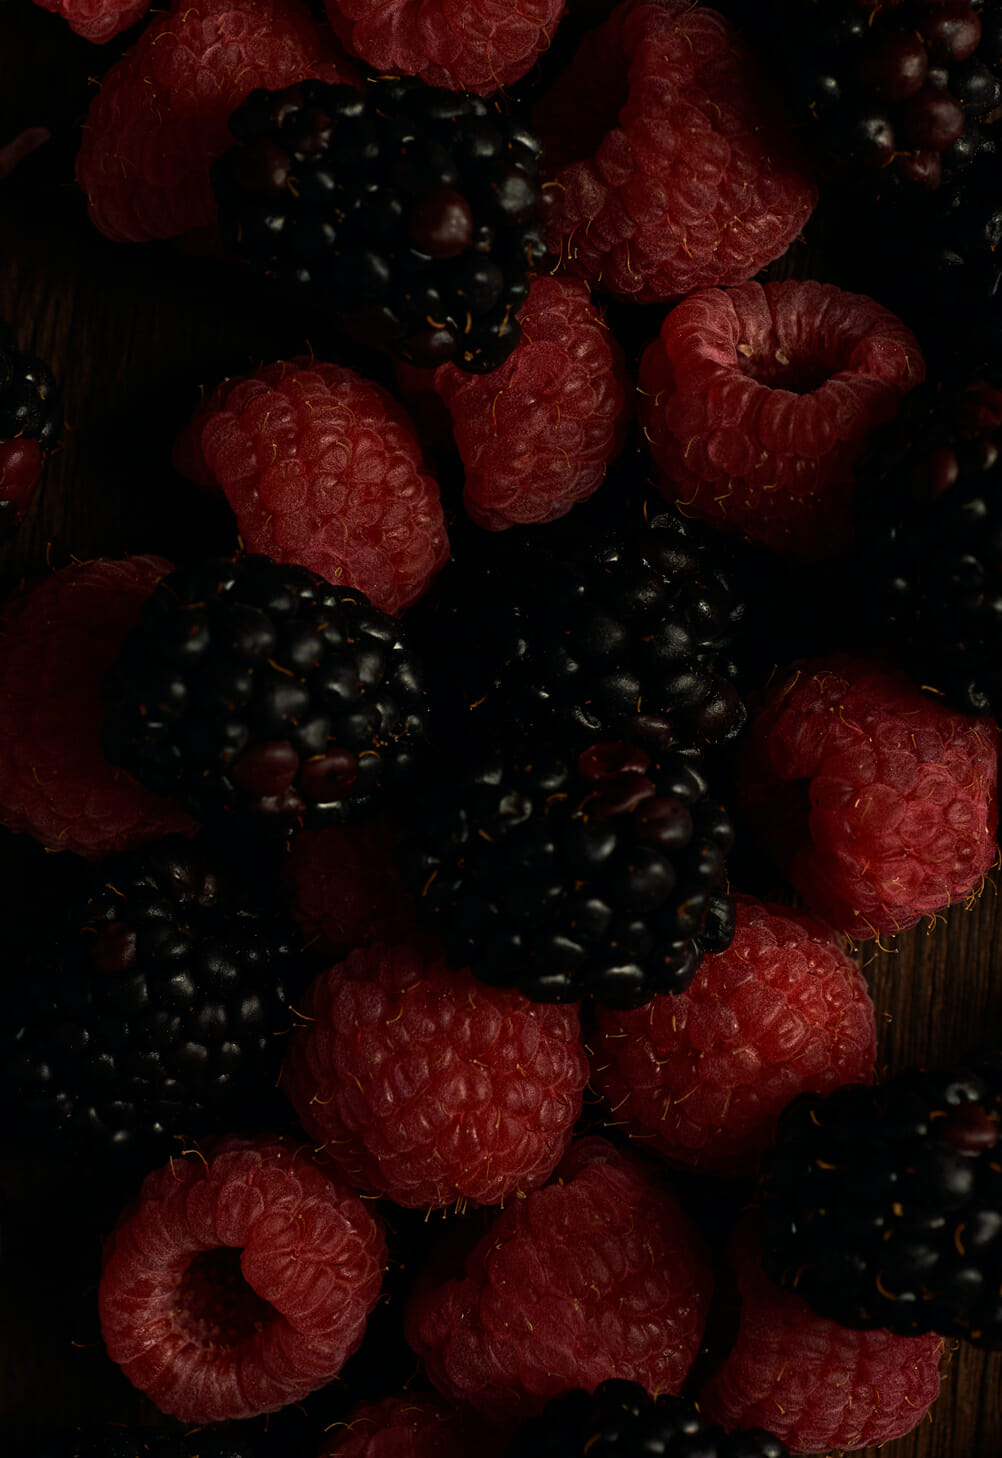 zaya rum cocktails raspberries blackberries